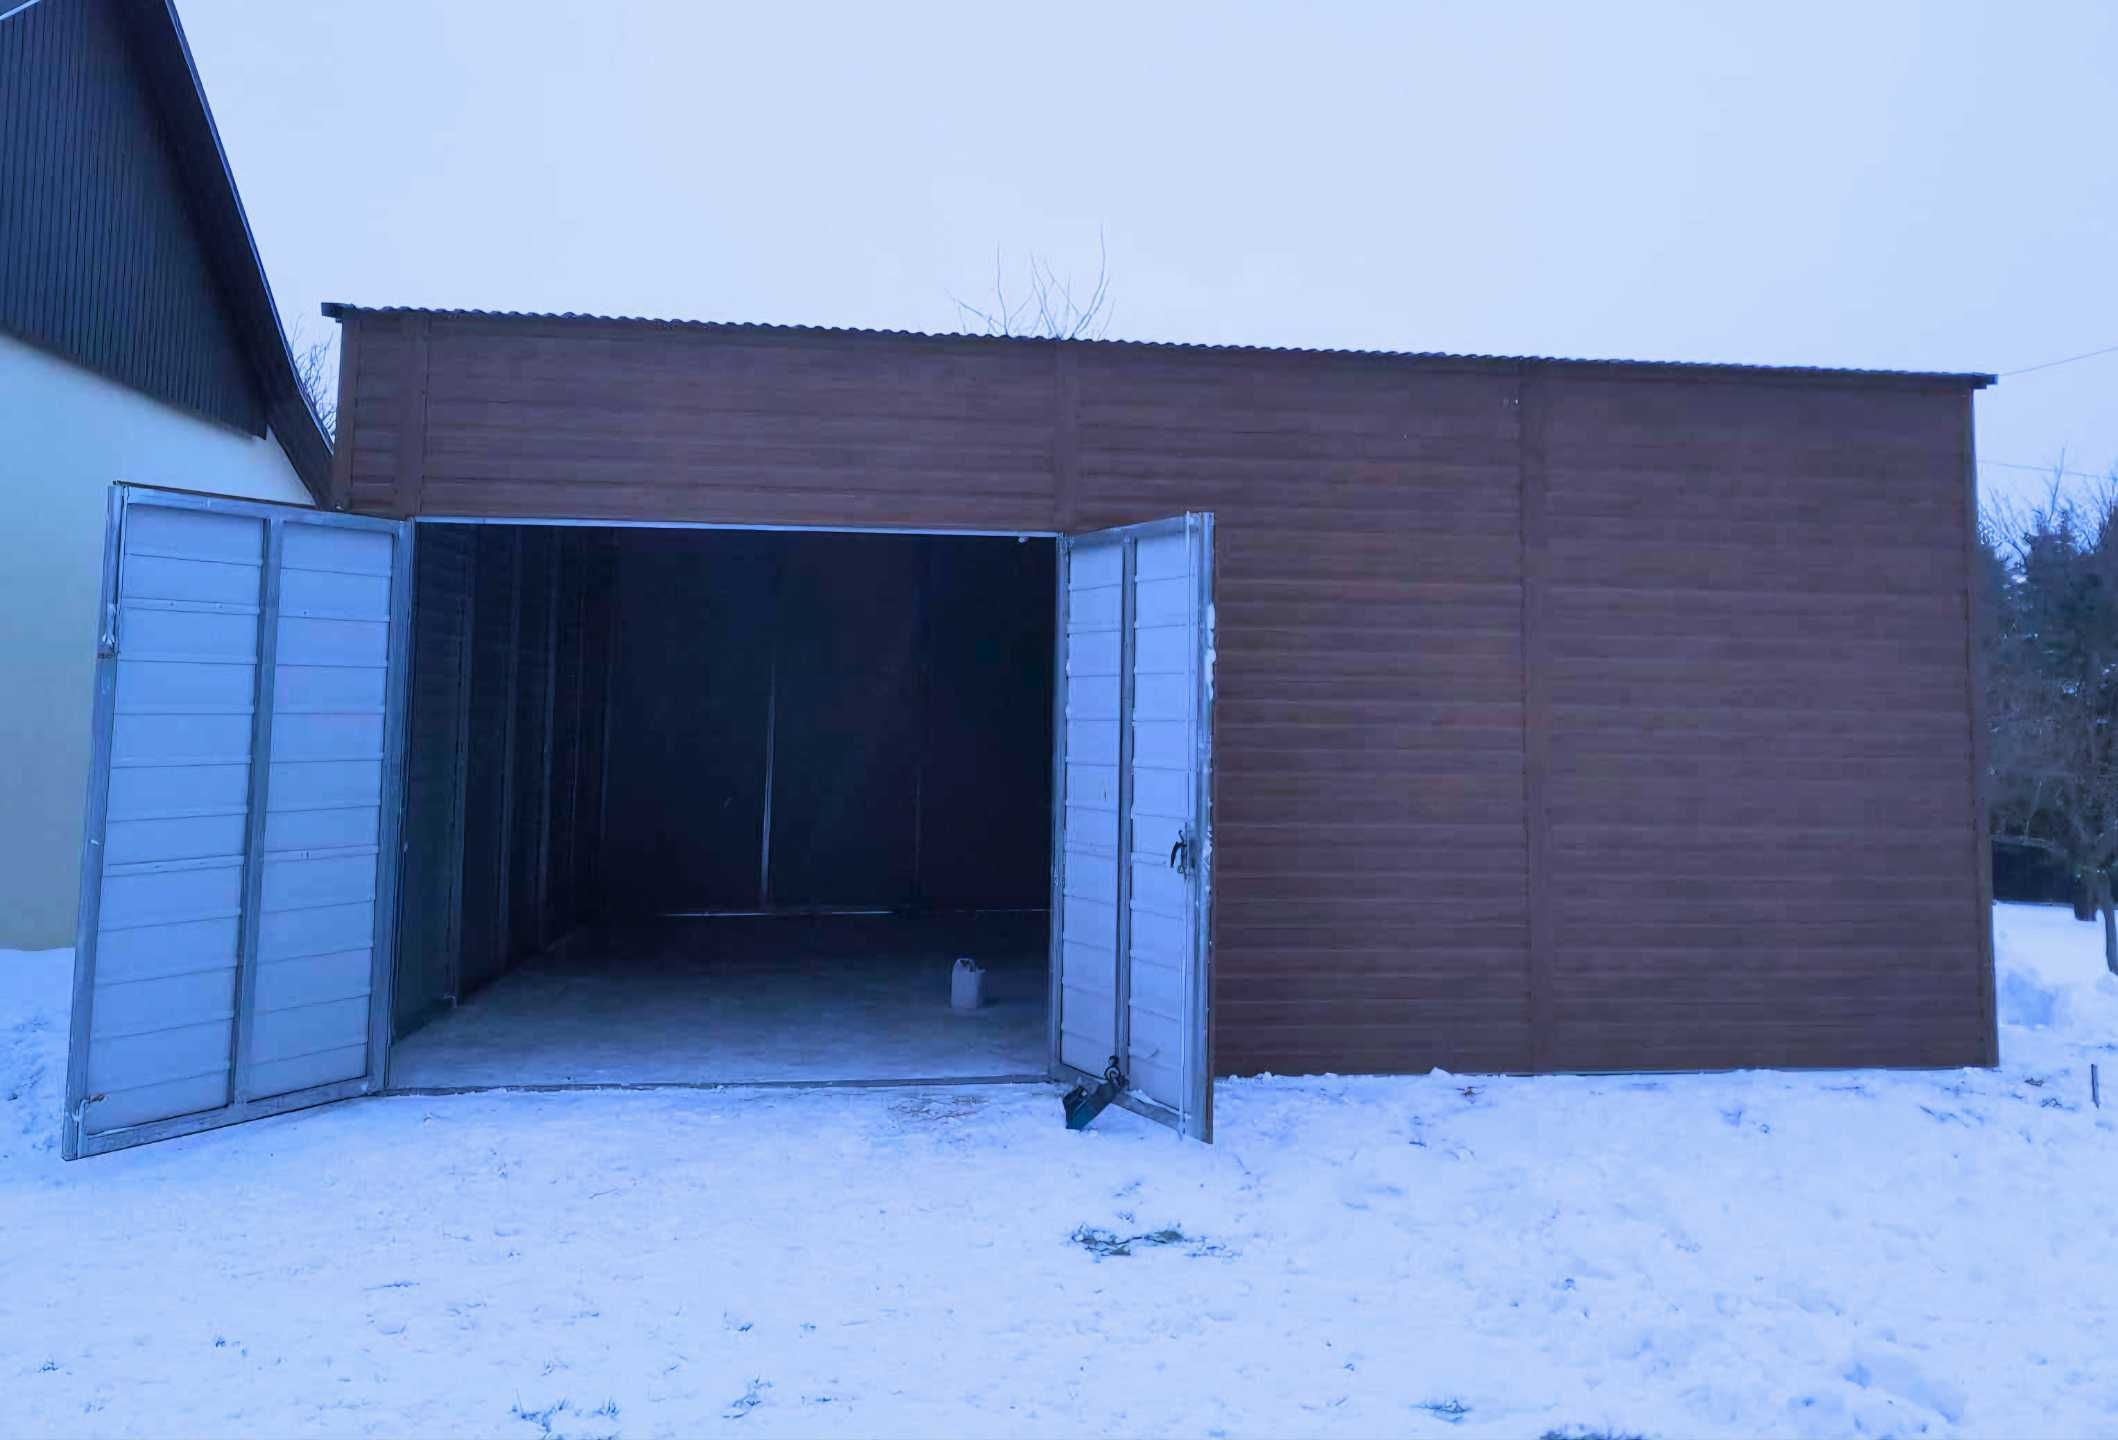 Garaż blaszany schowek hala rolnicza garaz ogrodowy 8x8m (9x7 10x8)